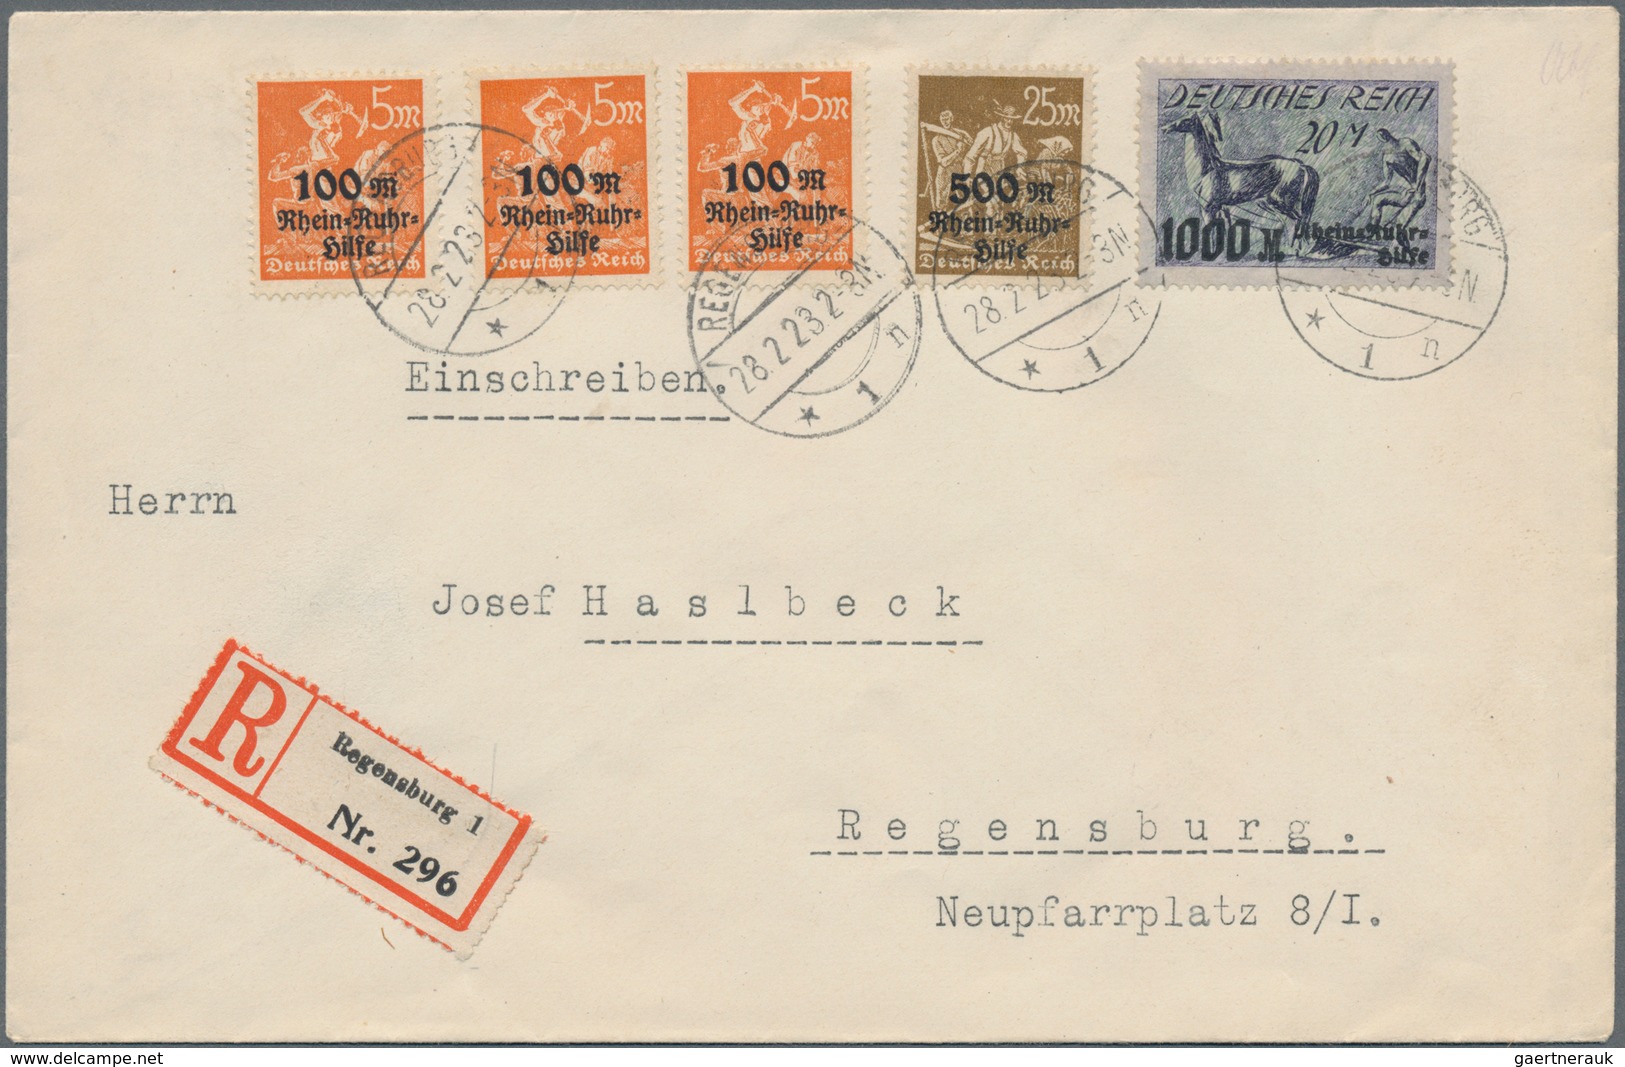 Deutsches Reich - Inflation: 1919/1923, vielseitige Partie von ca. 270 Briefen, Karten und Ganzsache